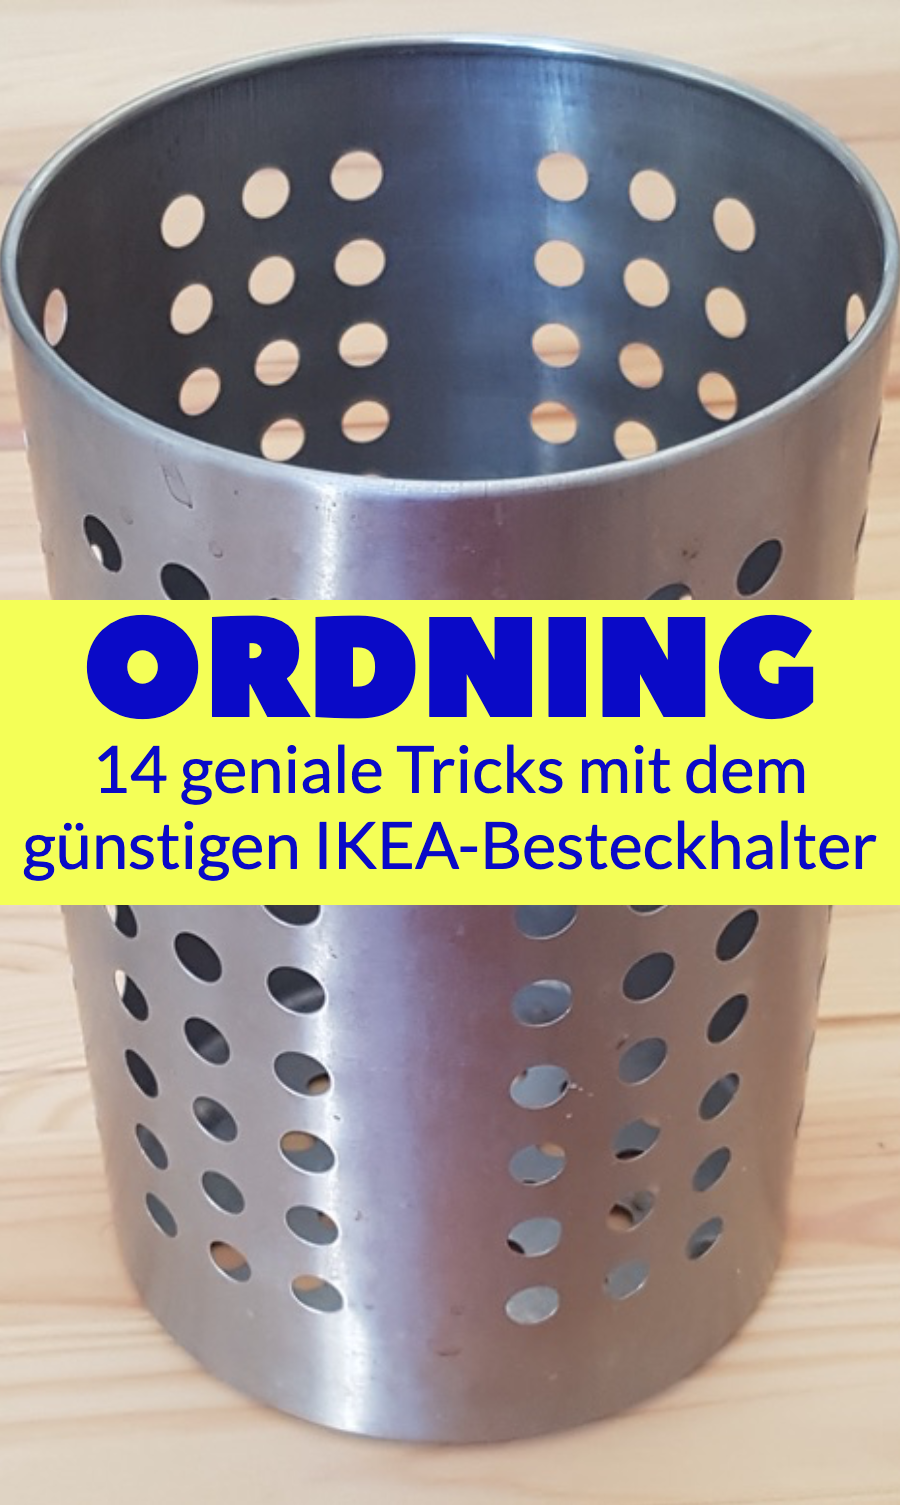 <strong>ORDNING – du glaubst nie, wie vielseitig der IKEA-Besteckhalter nutzbar ist. WOW!</strong>